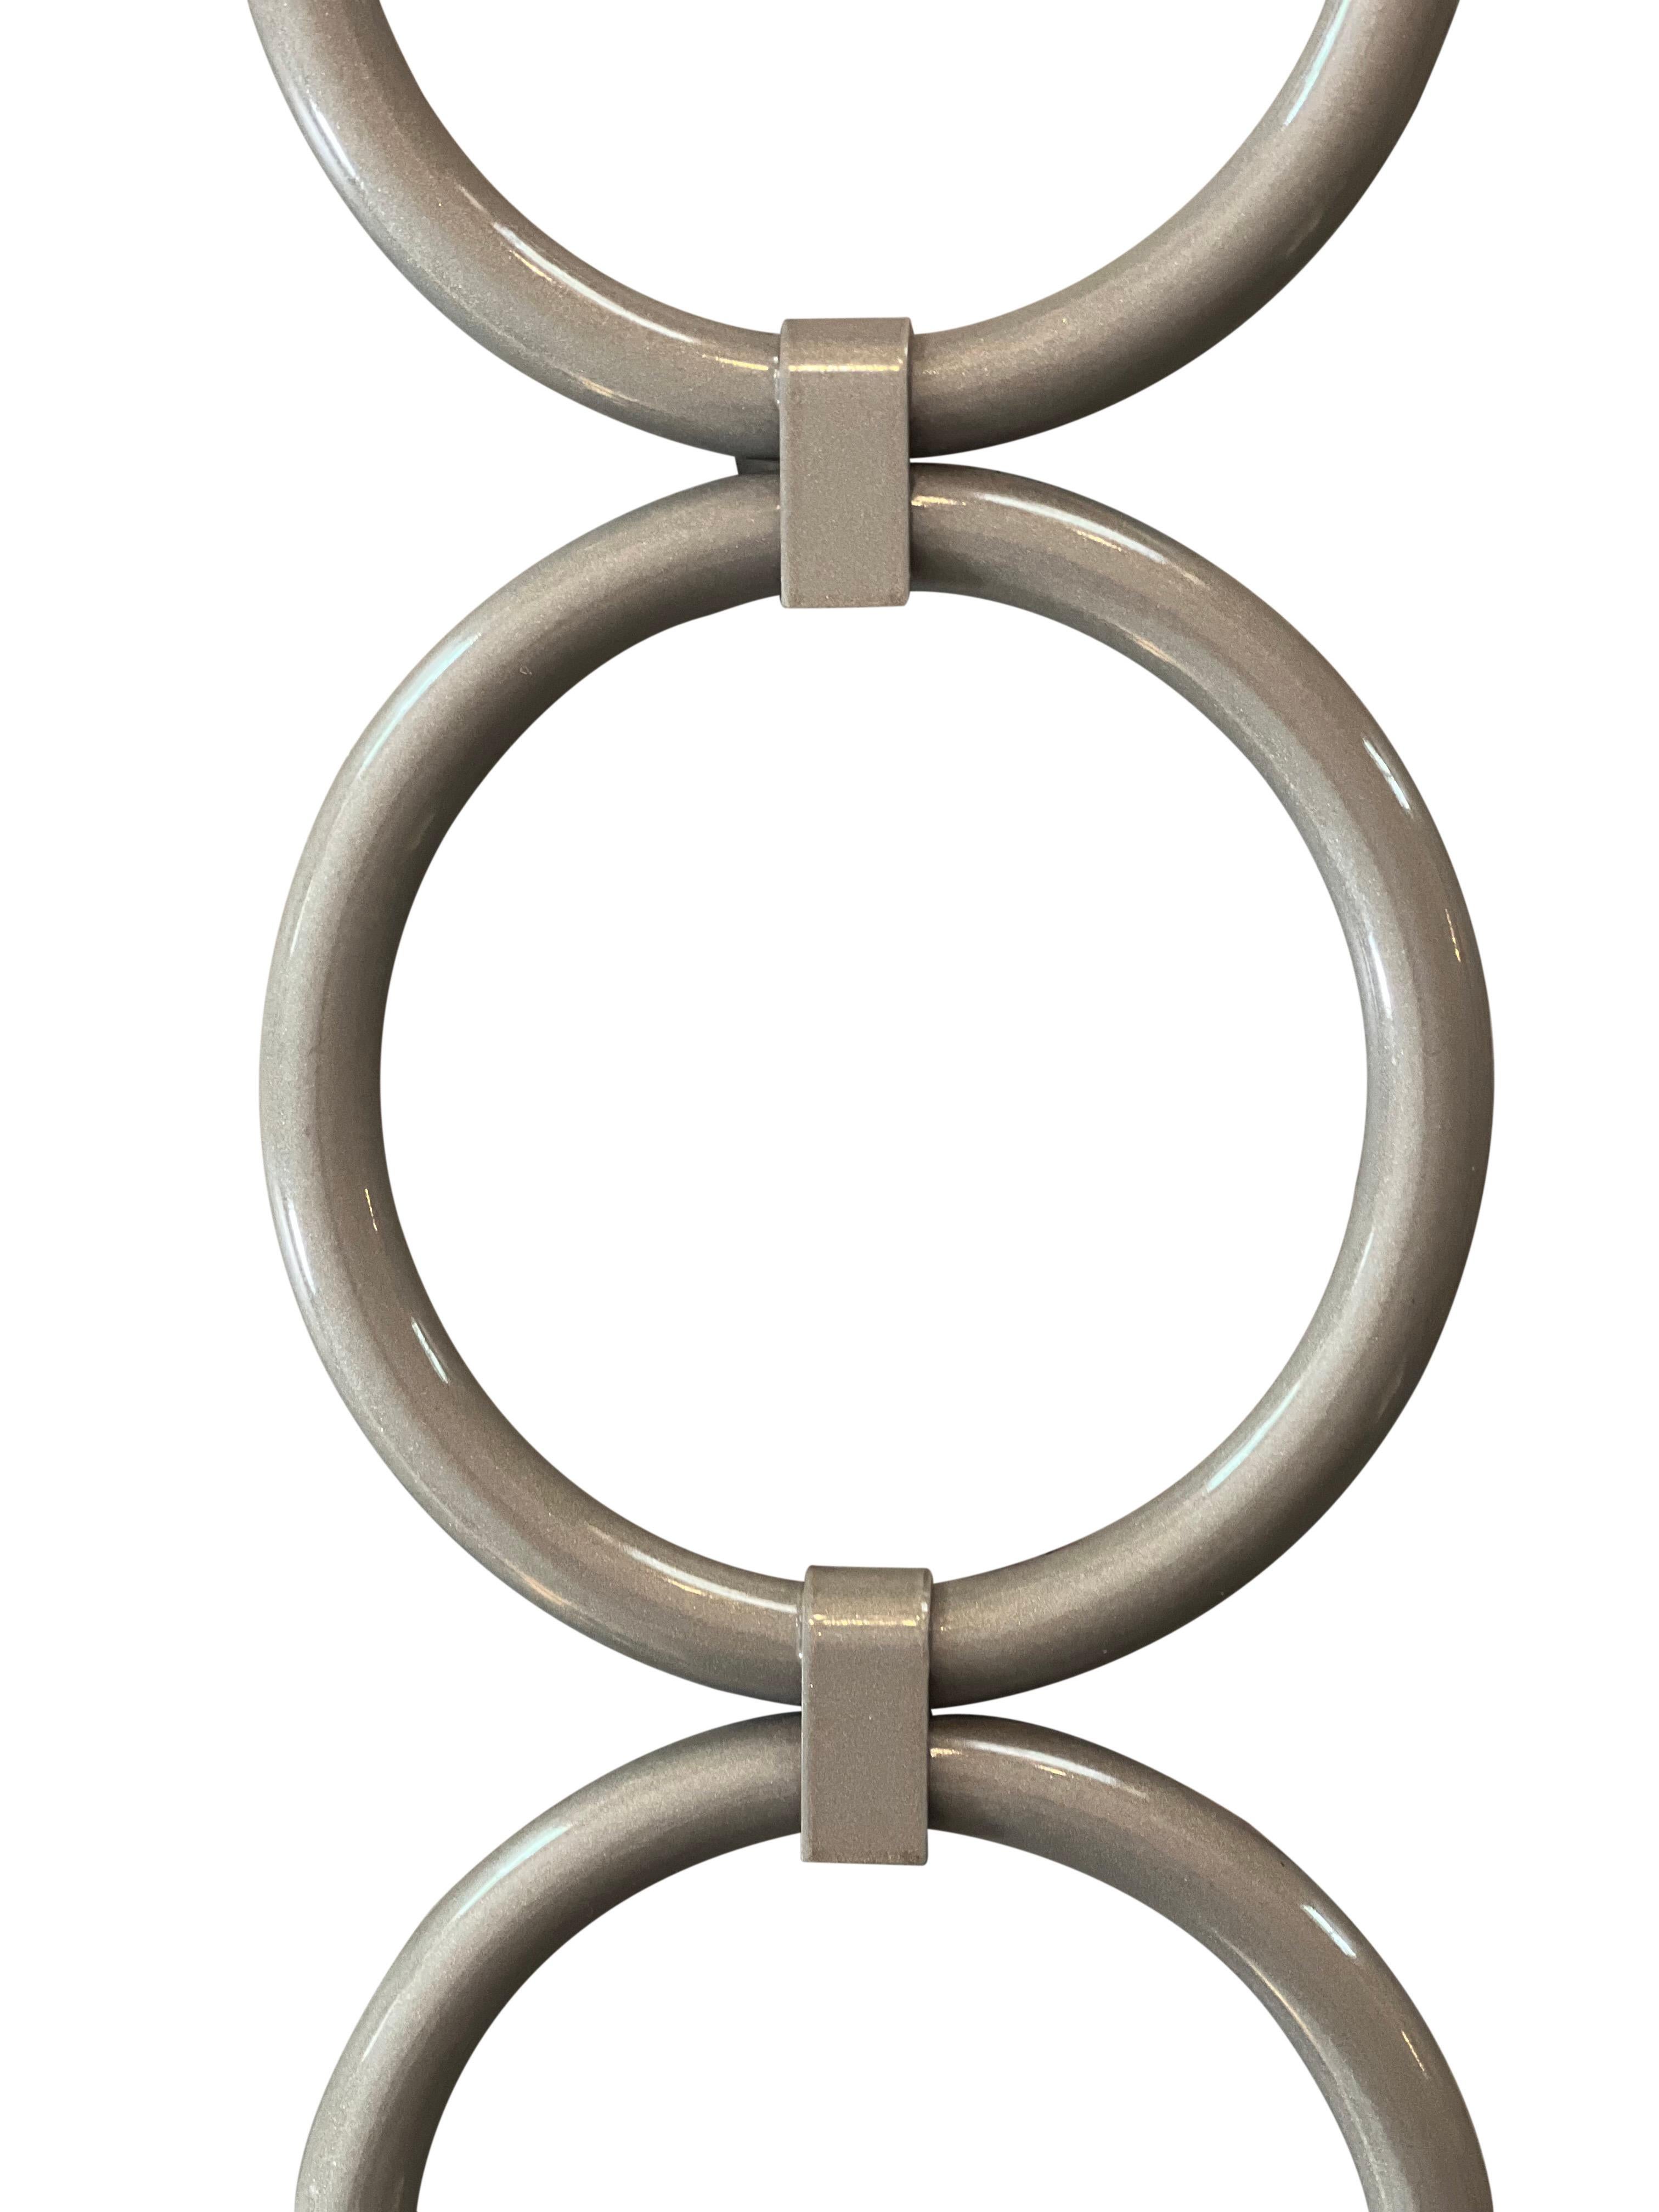 Fabuleuses appliques hautes inspirées de Chanel avec de nouveaux abat-jours en lin taillés à la main. 

Les appliques présentent des anneaux symétriques imbriqués dans un taupe neutre avec une finition brillante. Les abat-jours, de forme